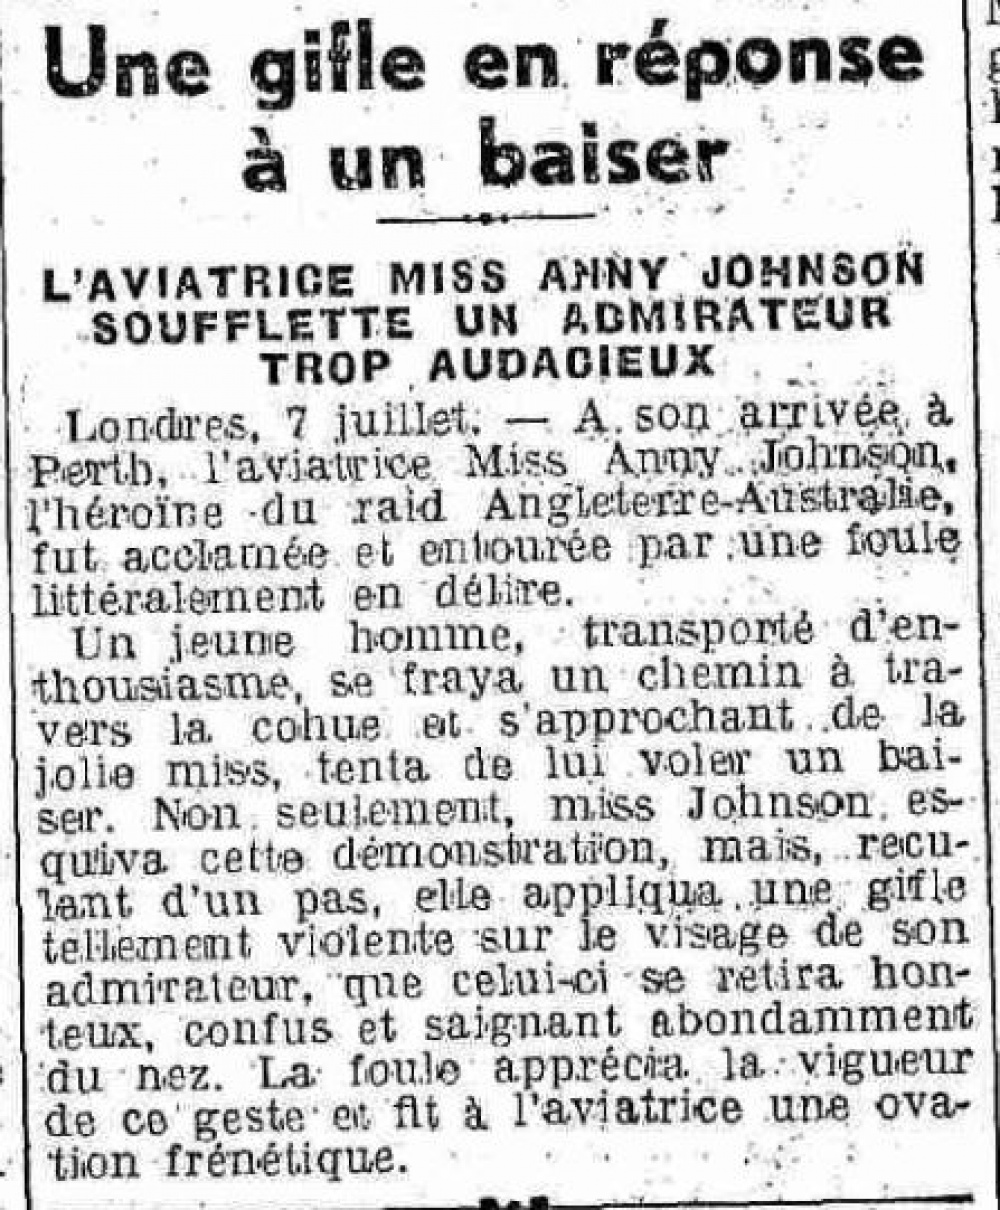 Le Petit Dauphinois, 8 juillet 1930.<br>